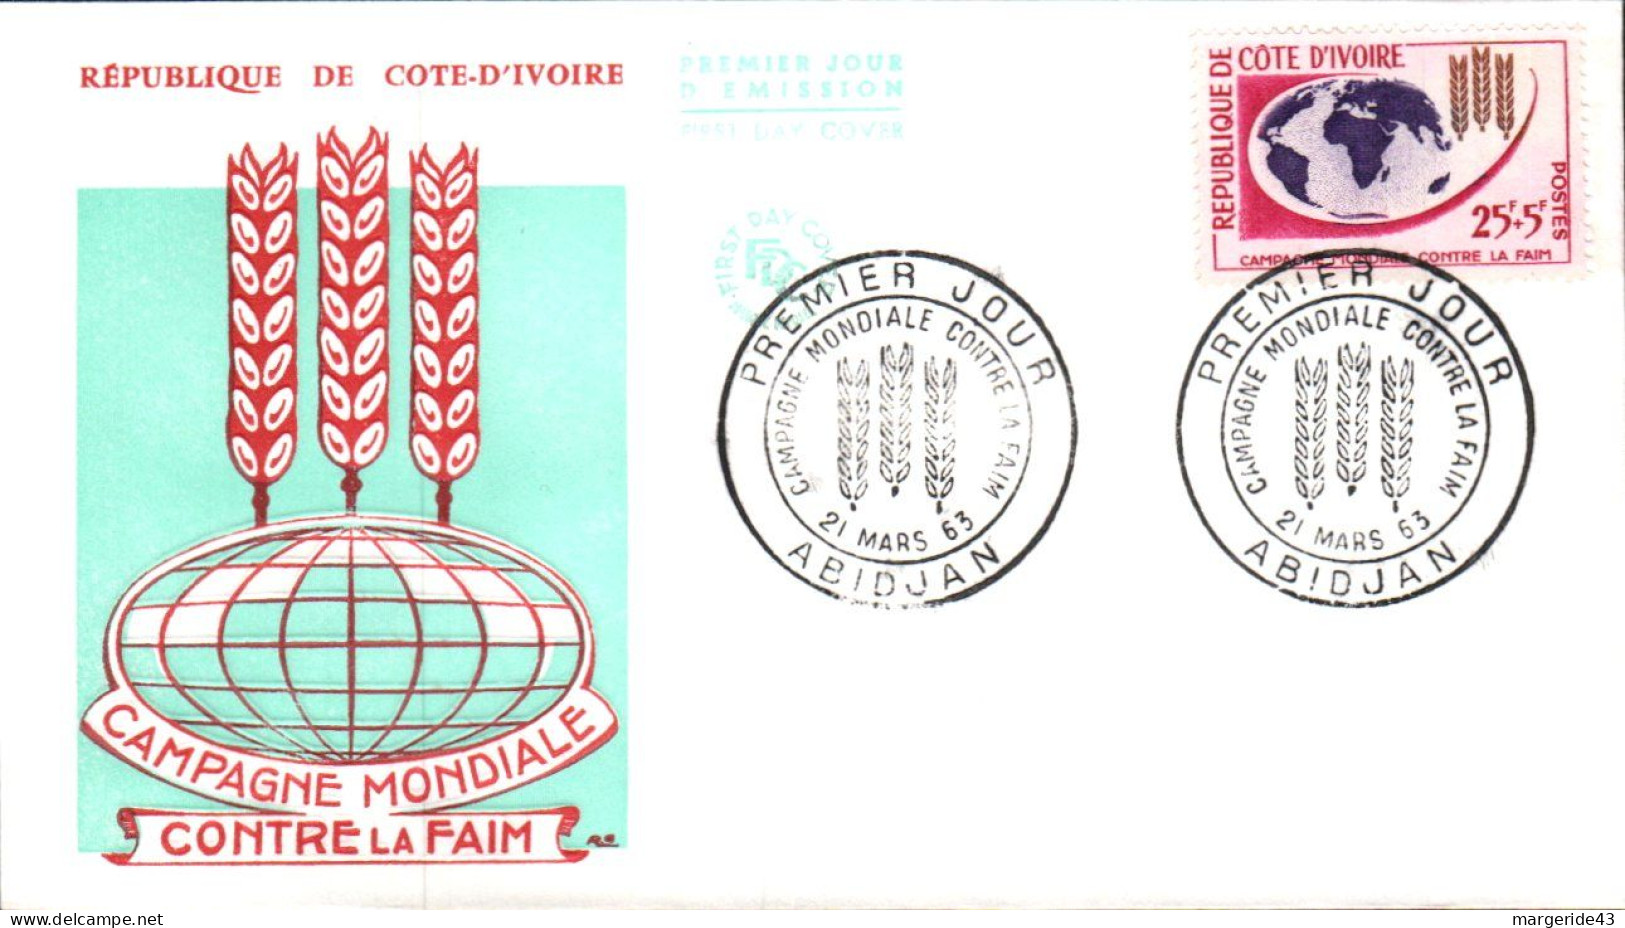 COTE D'IVOIRE FDC 1963 CAMPAGNE CONTRE LA FAIM - Ivoorkust (1960-...)